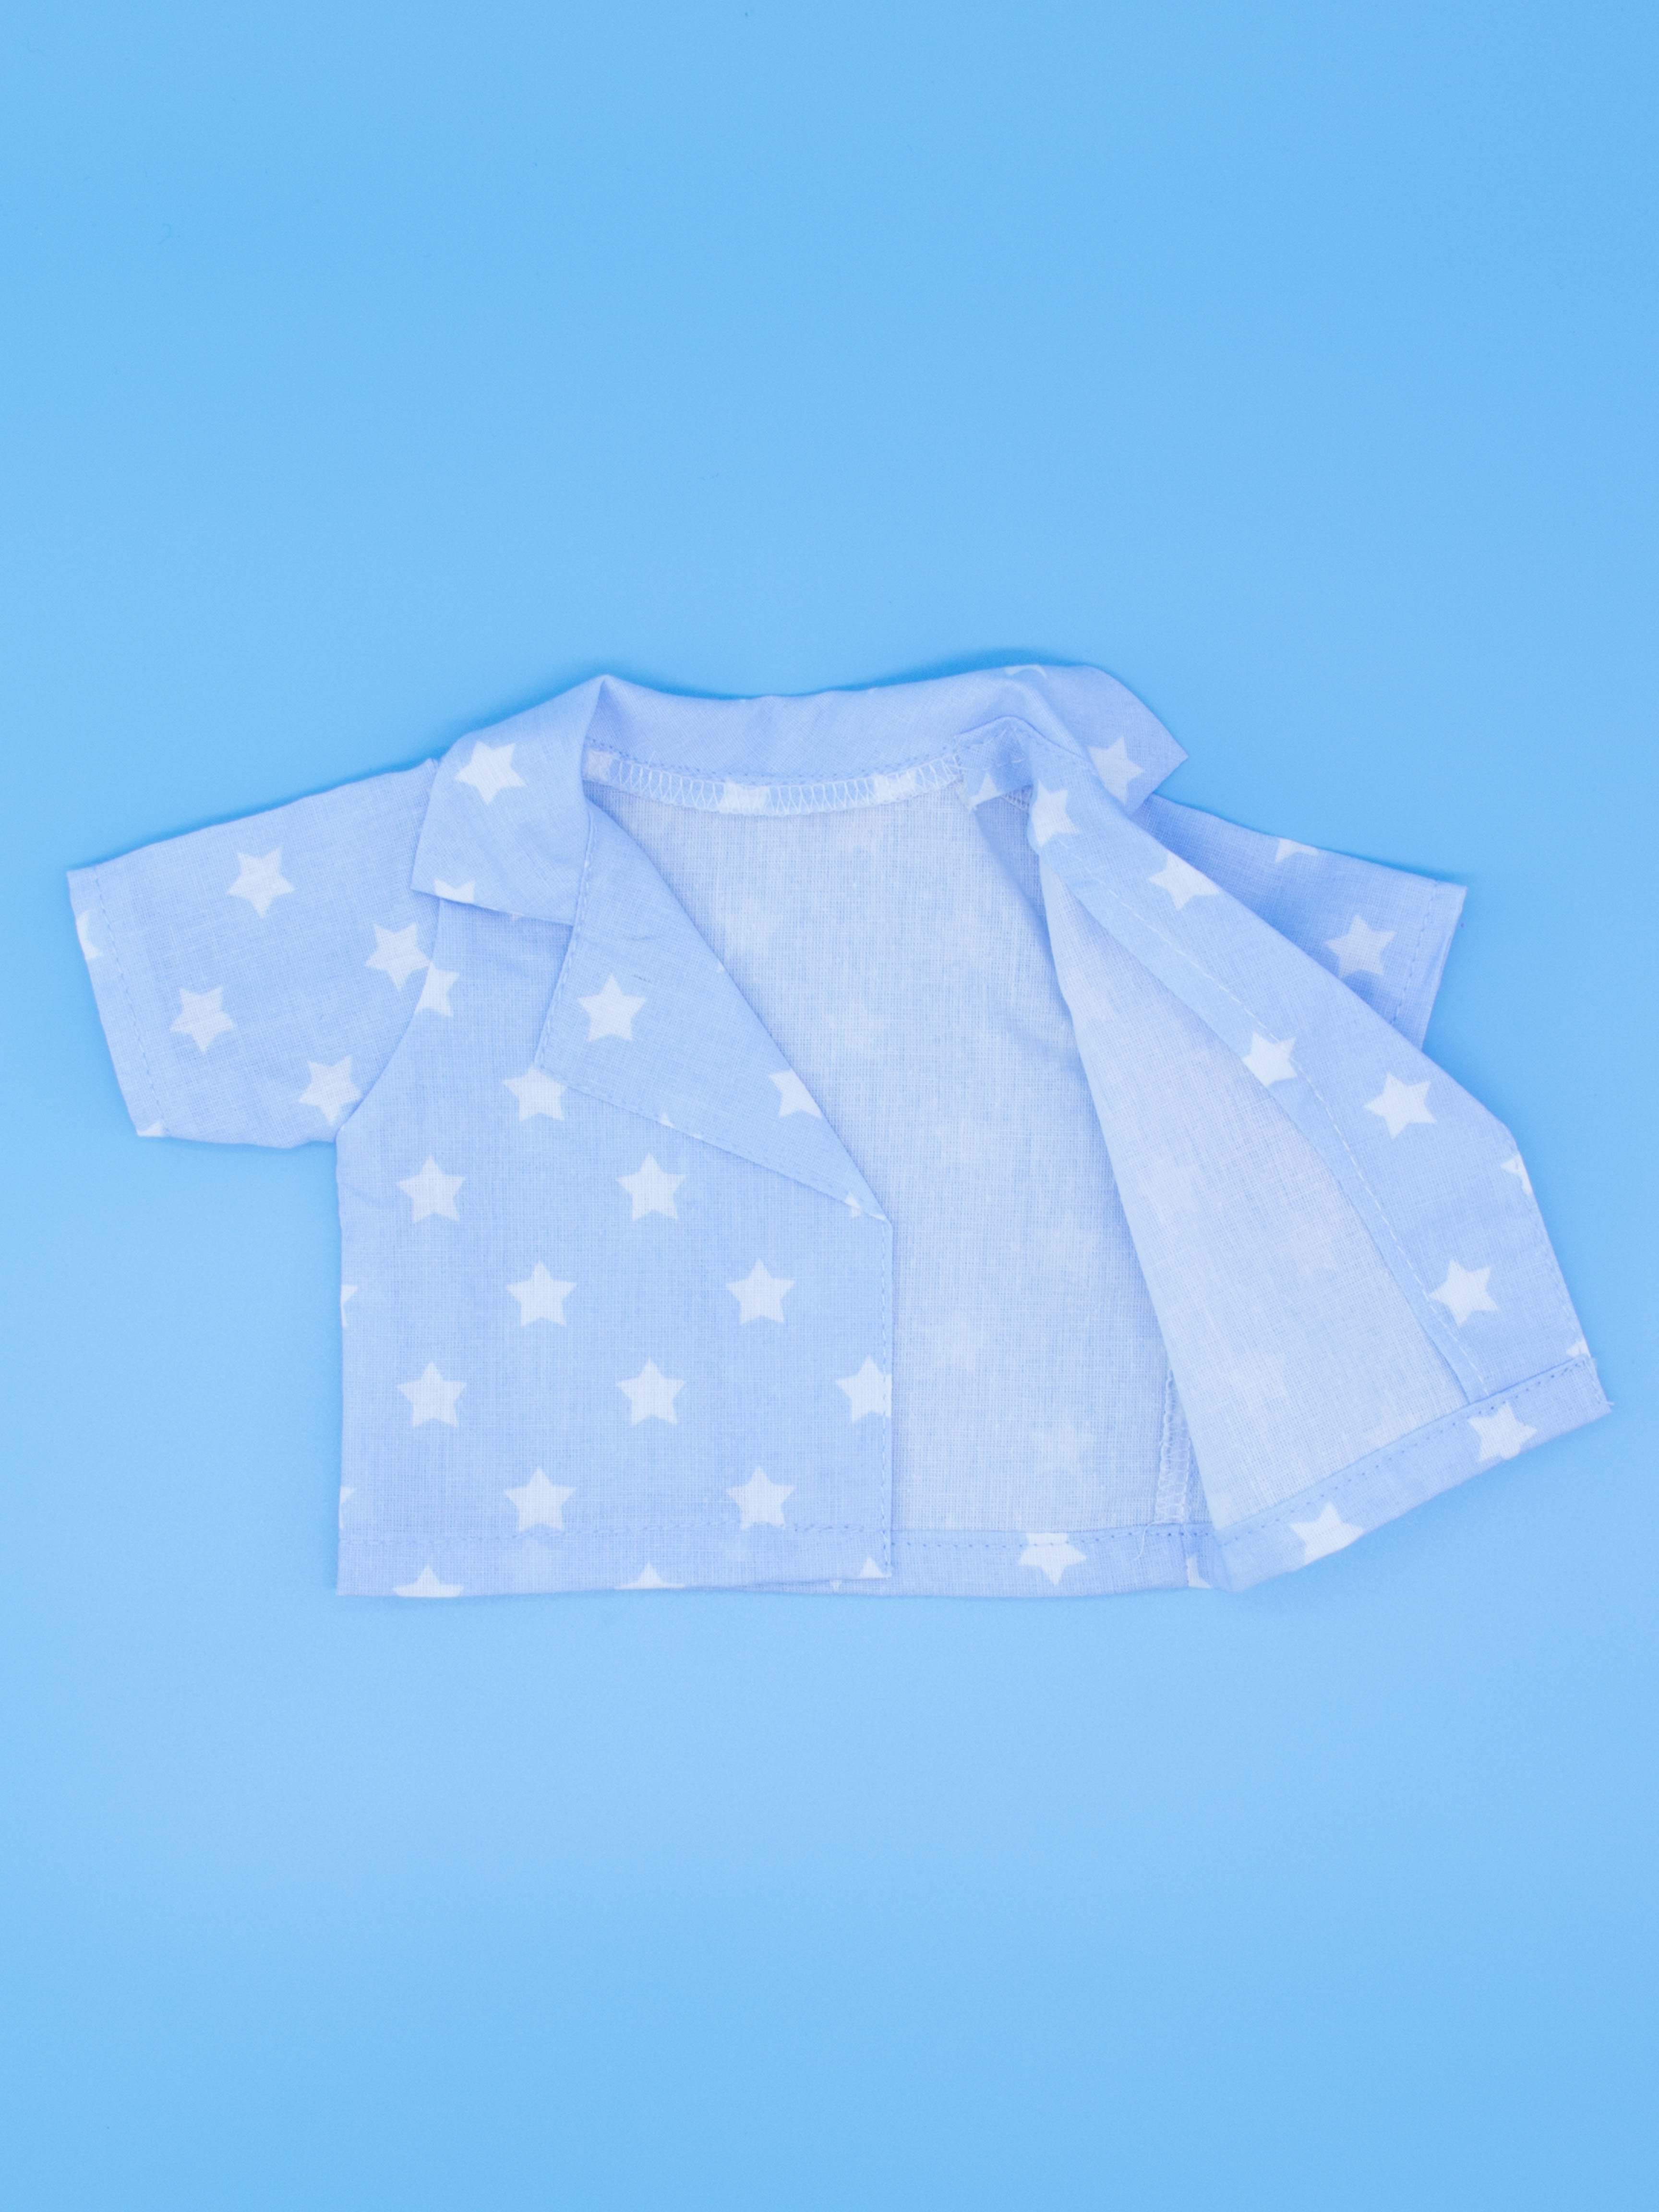 Комплект одежды МОДНИЦА для пупса 43-48 см голубой 6129голубой-белый - фото 10